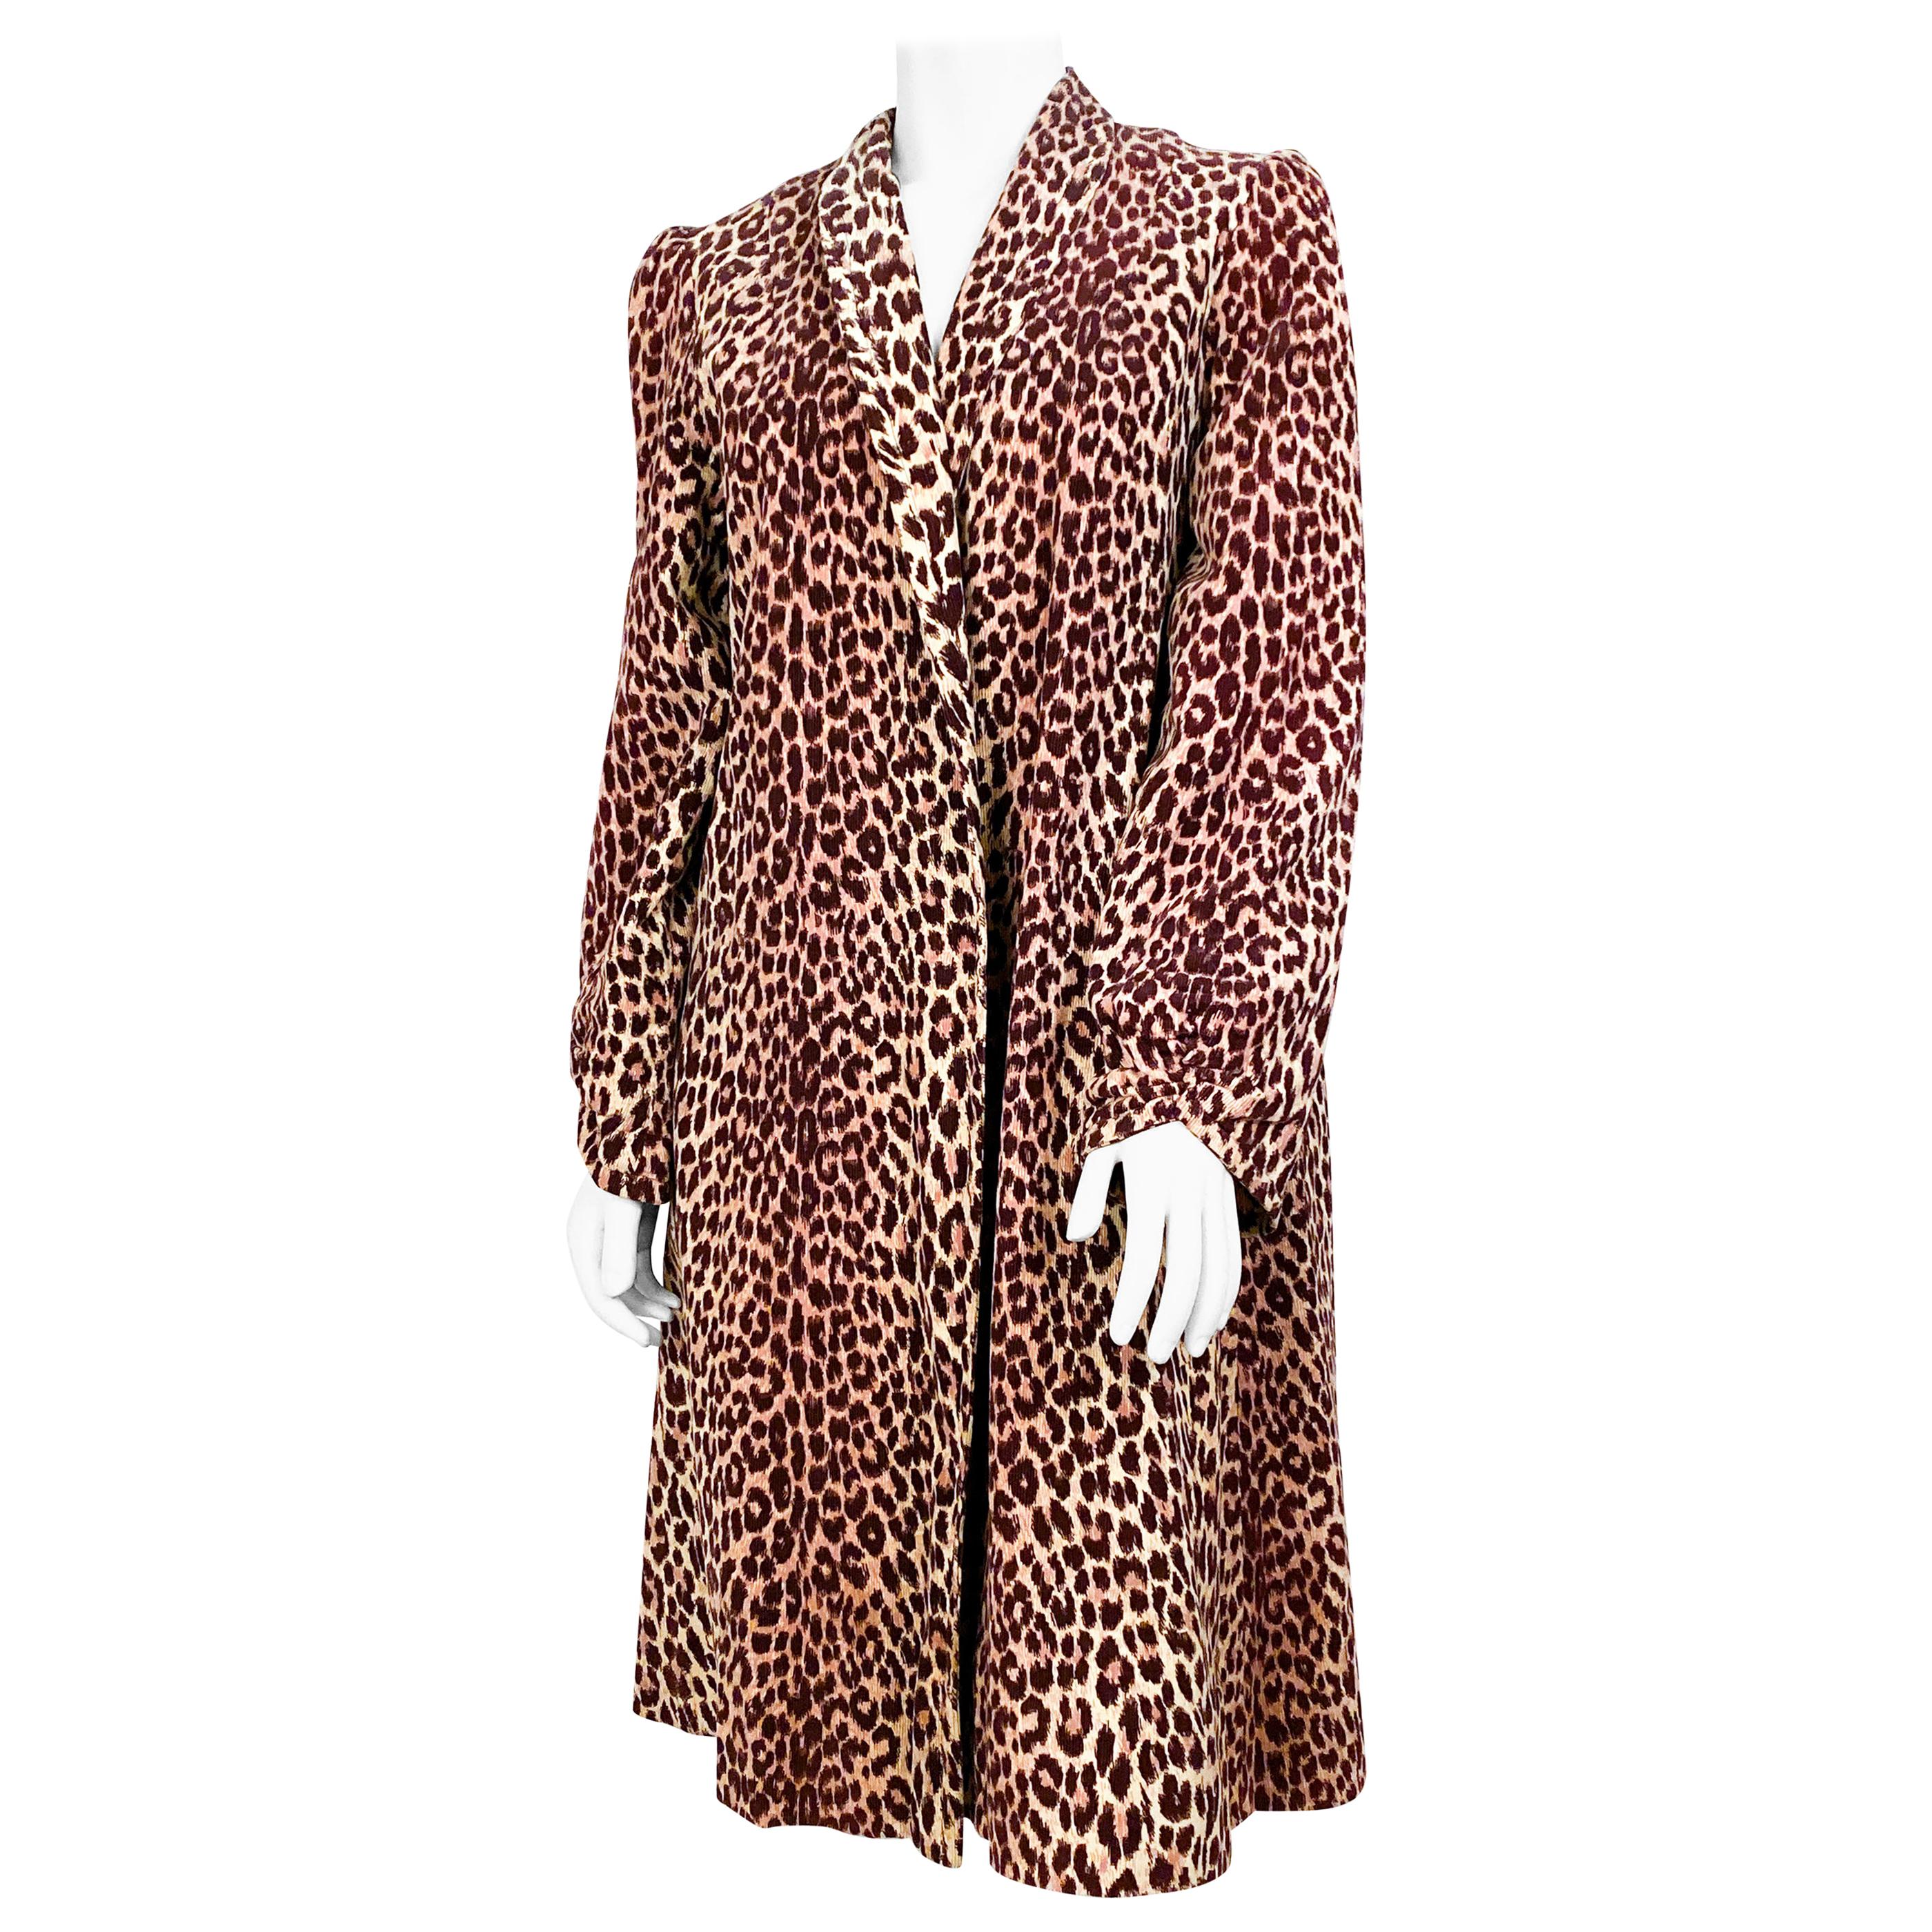 1940s Cheetah Printed Coat